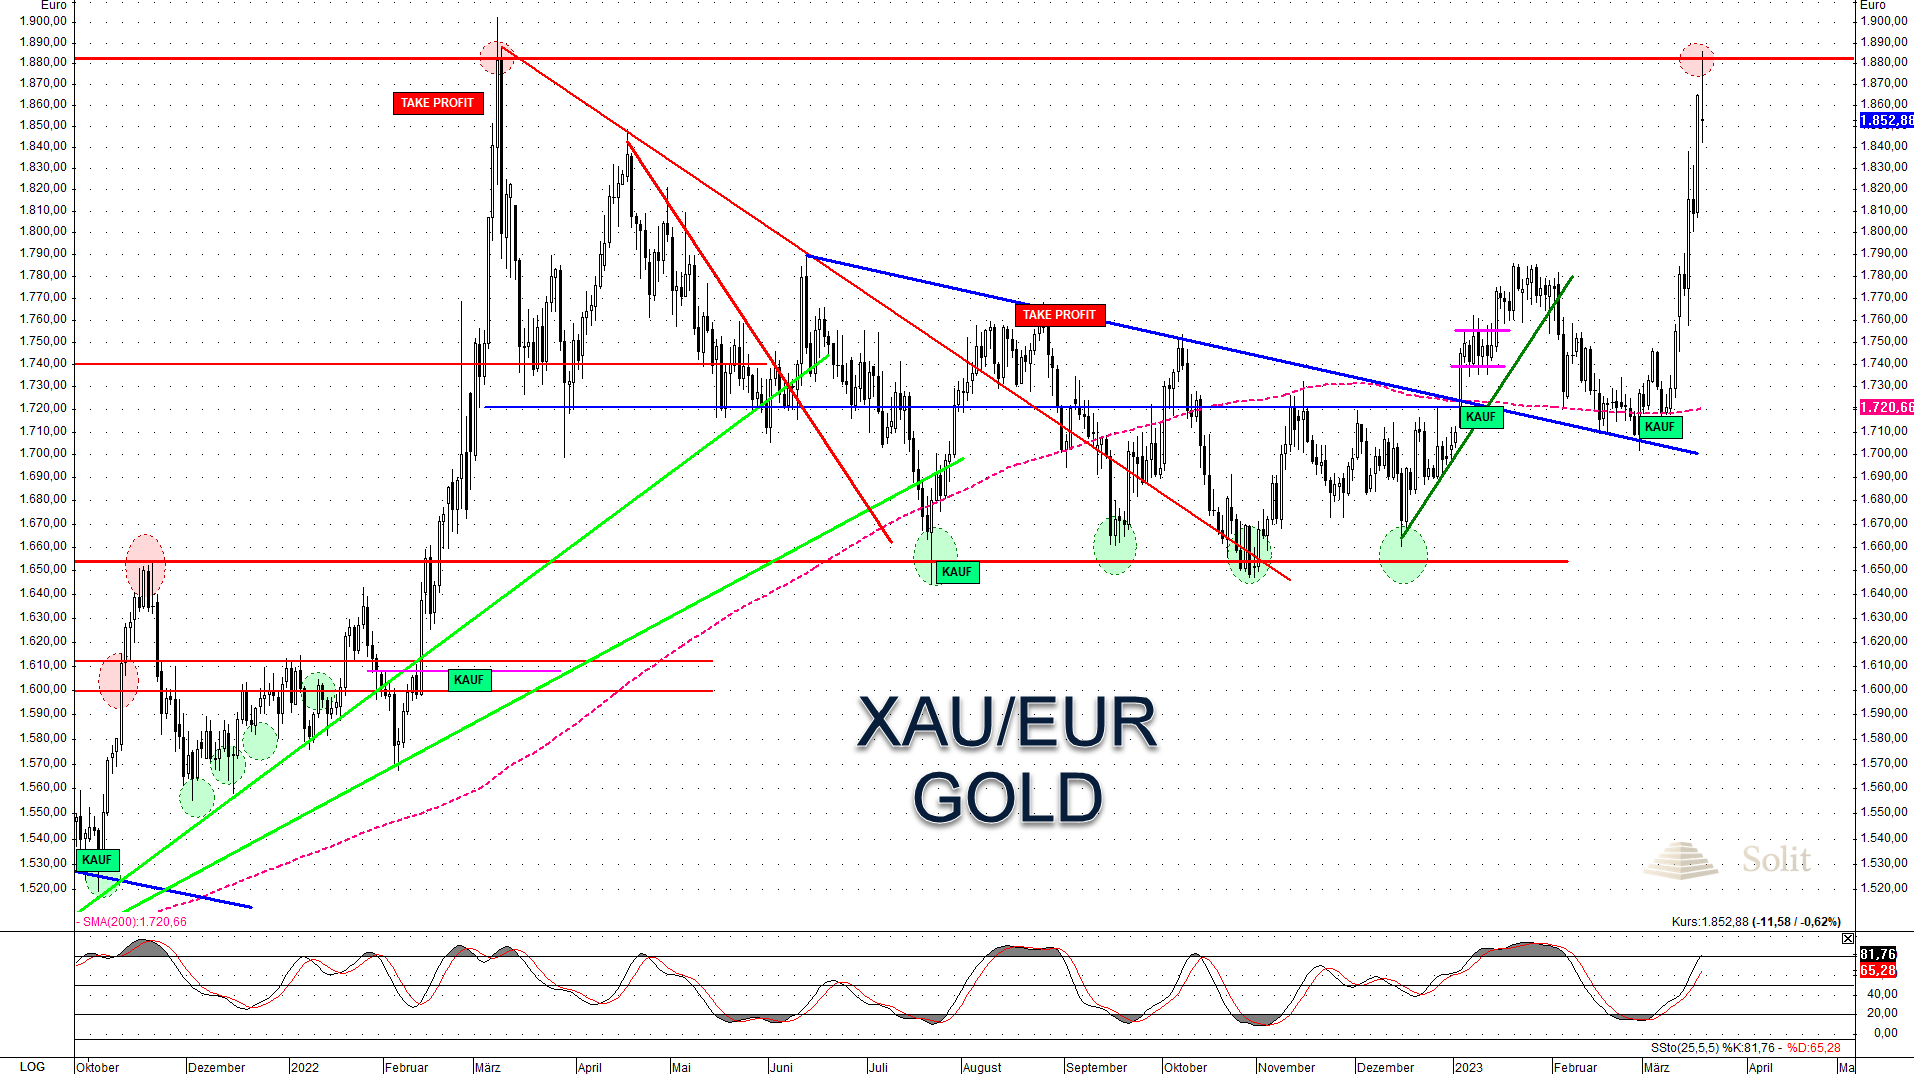 Goldpreis in Euro fast bei Allzeithoch